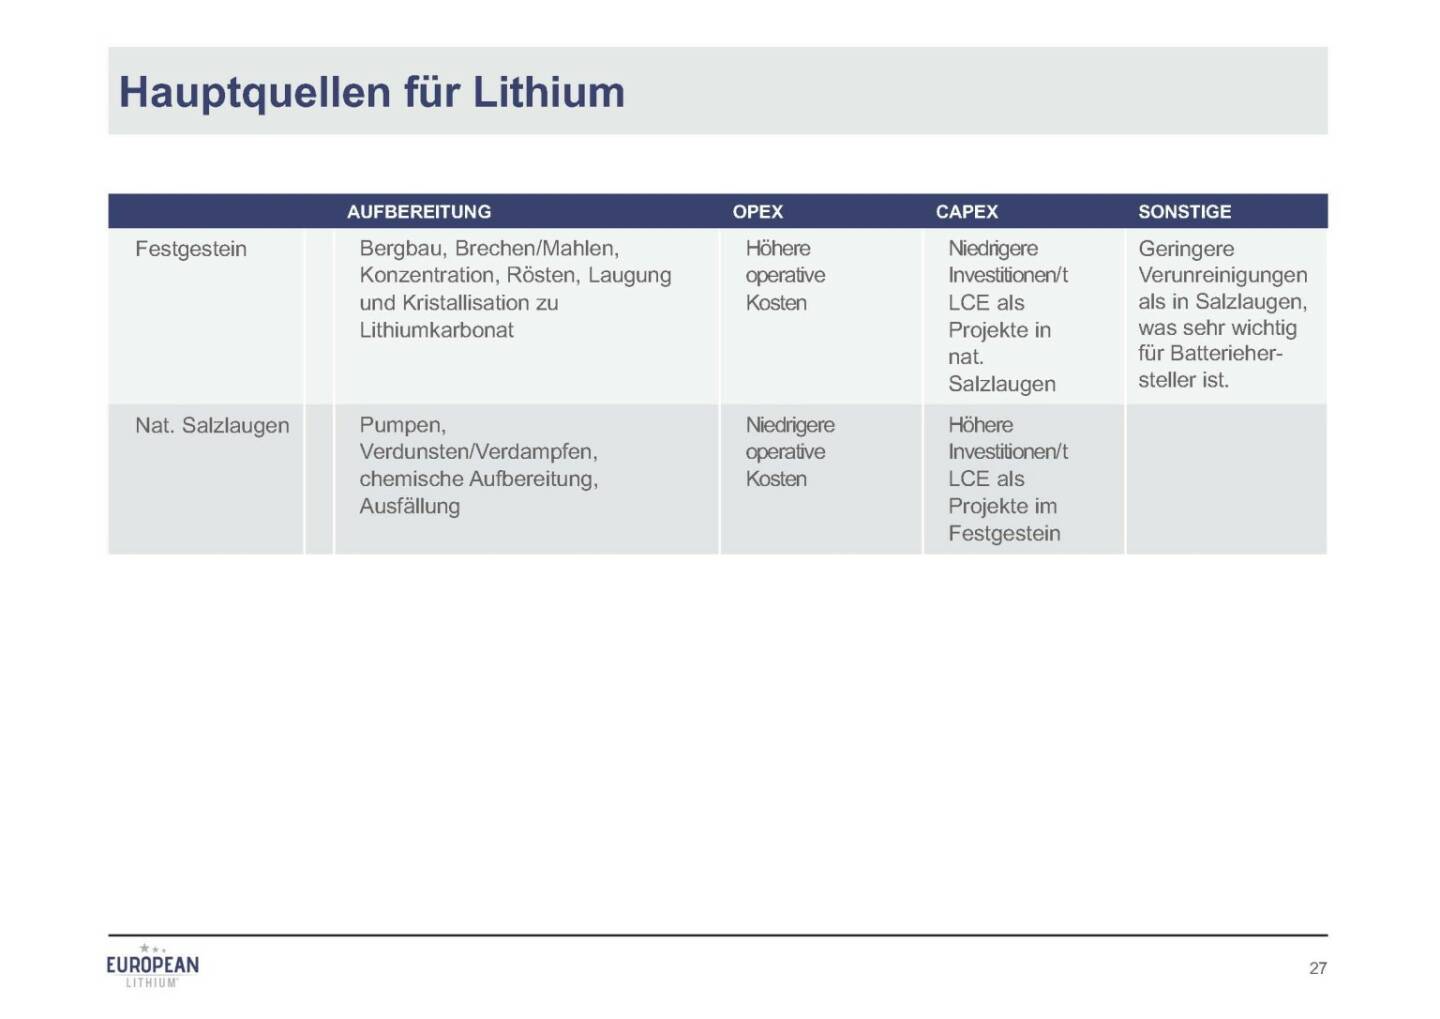 Präsentation European Lithium - Hauptquellen